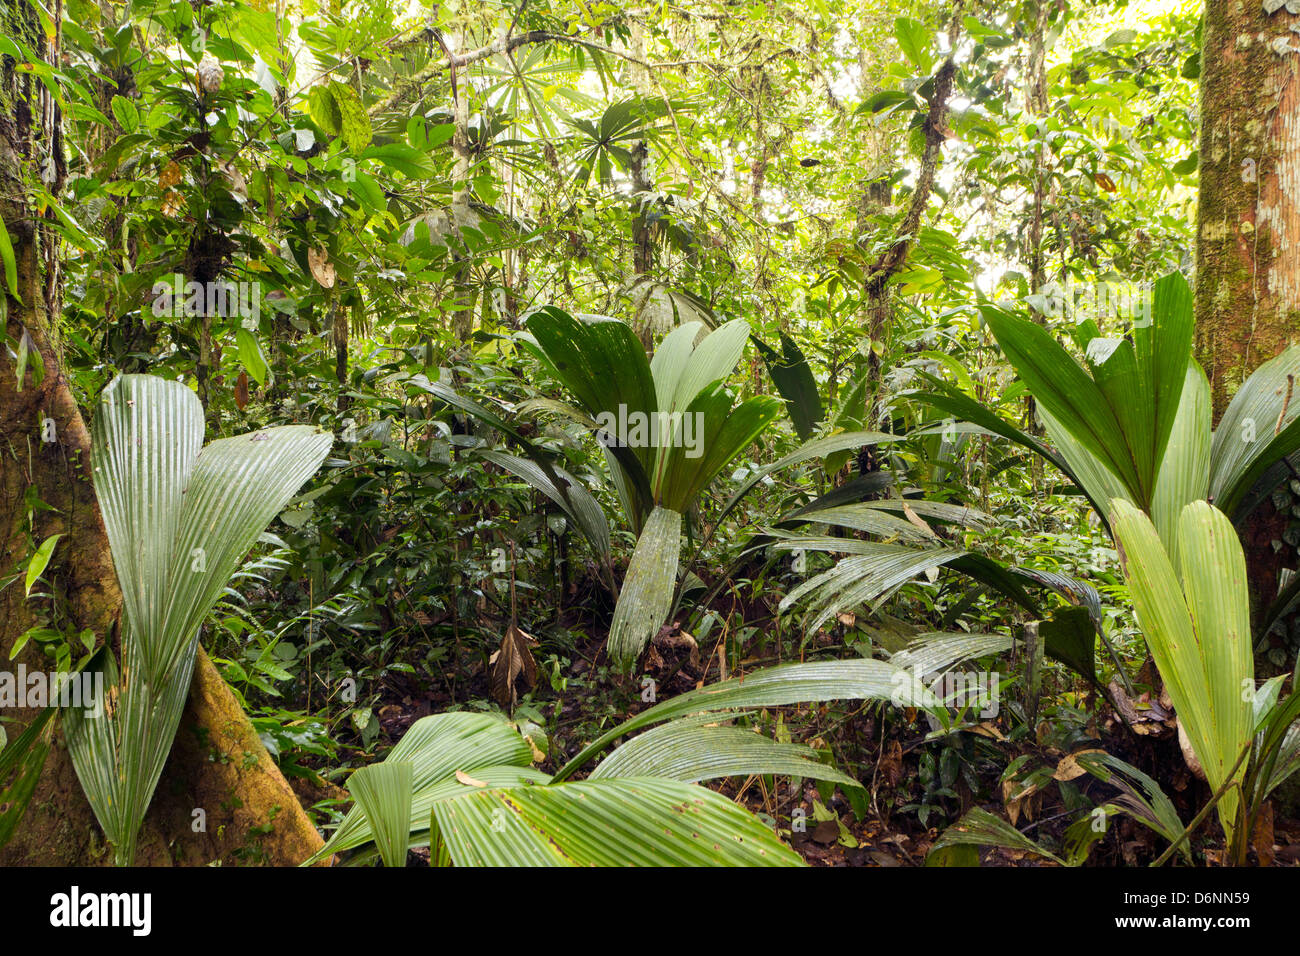 Innere des primären Regenwald mit einer Geonoma Palme im Vordergrund, Ecuador Stockfoto